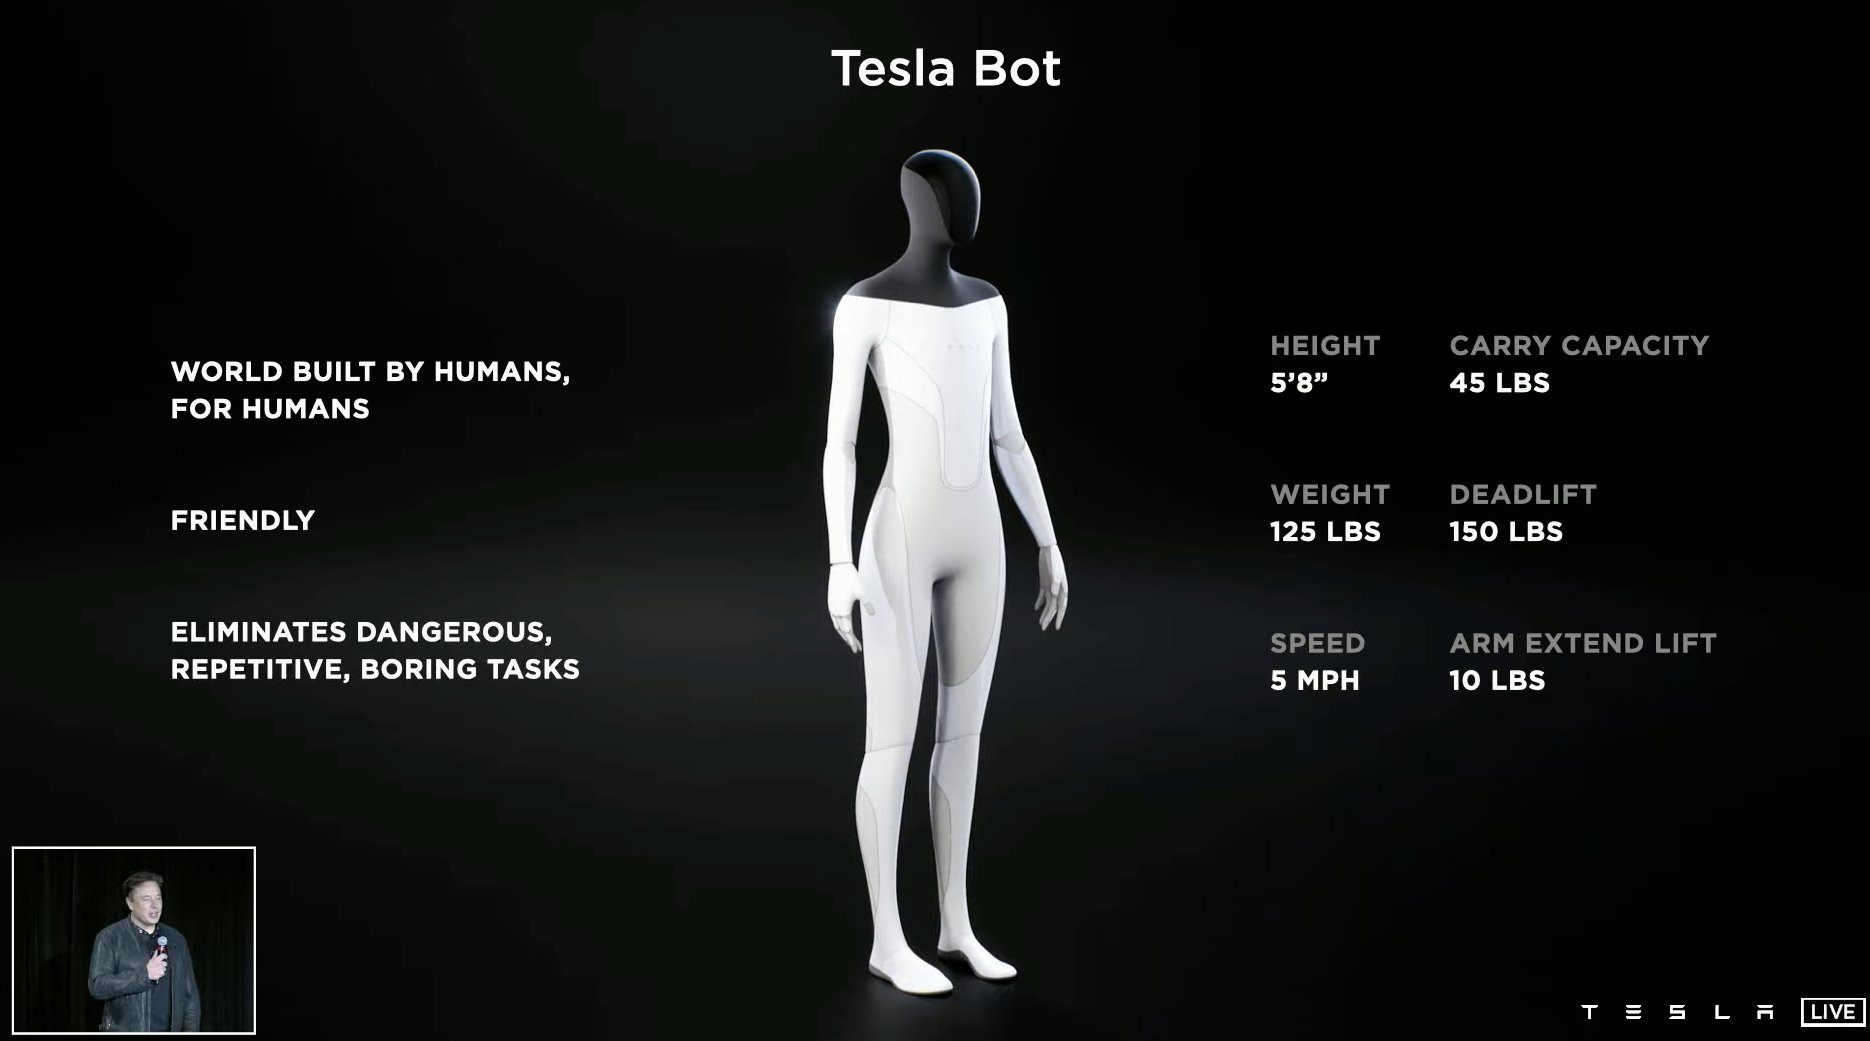 Tesla Bot specs